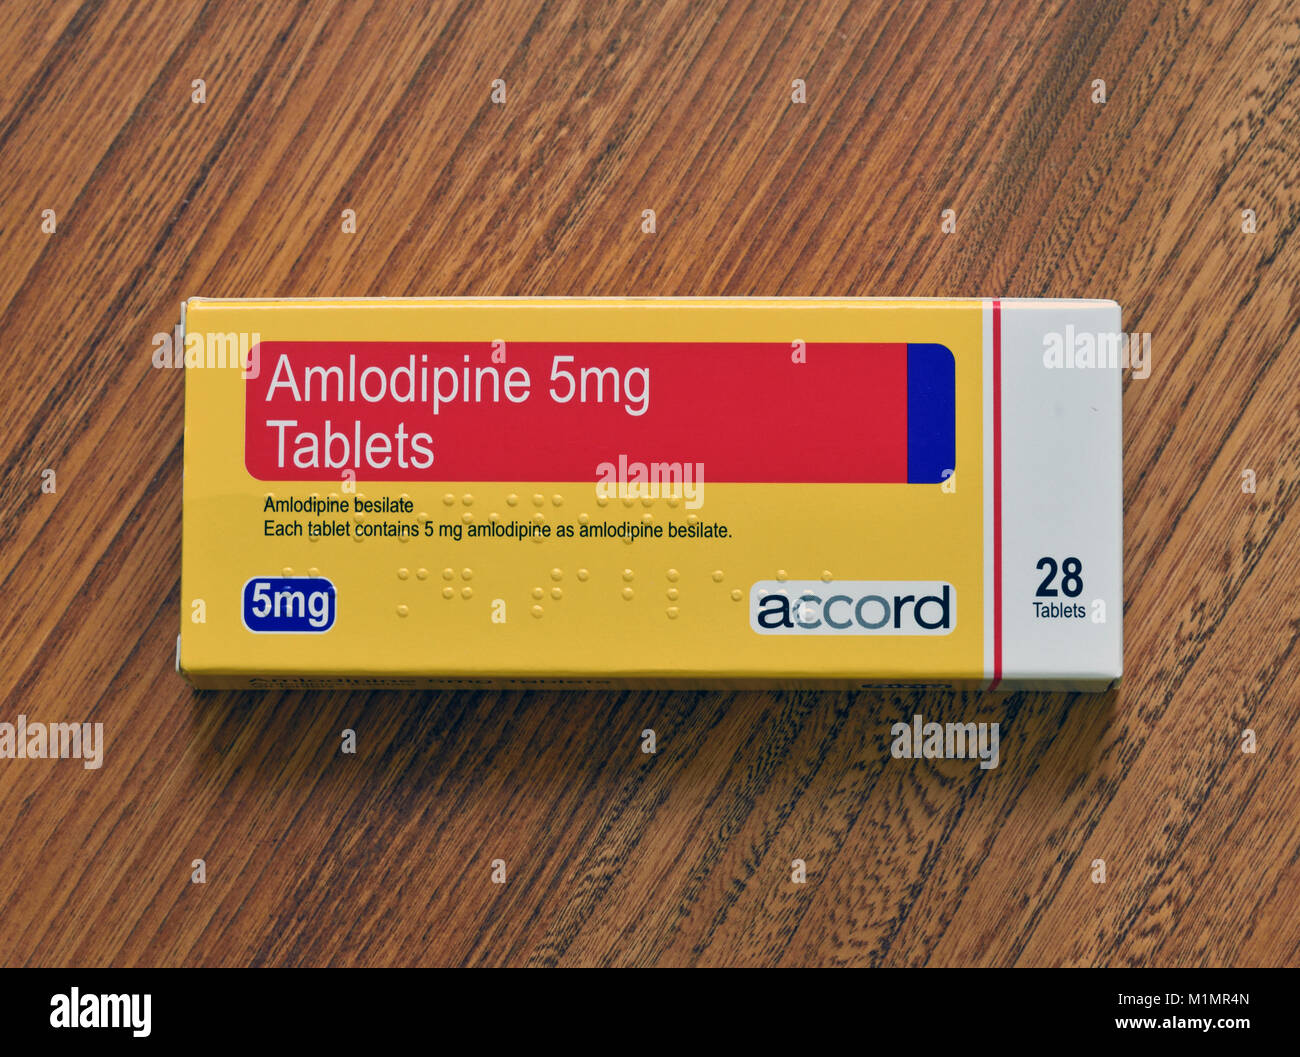 Fotografia della confezione di Amlodipina 5mg. Tablet. 28 compresse. Amlodipina besilato. Ogni compressa contiene 5mg amlodipina besilato. Accordo. Foto Stock